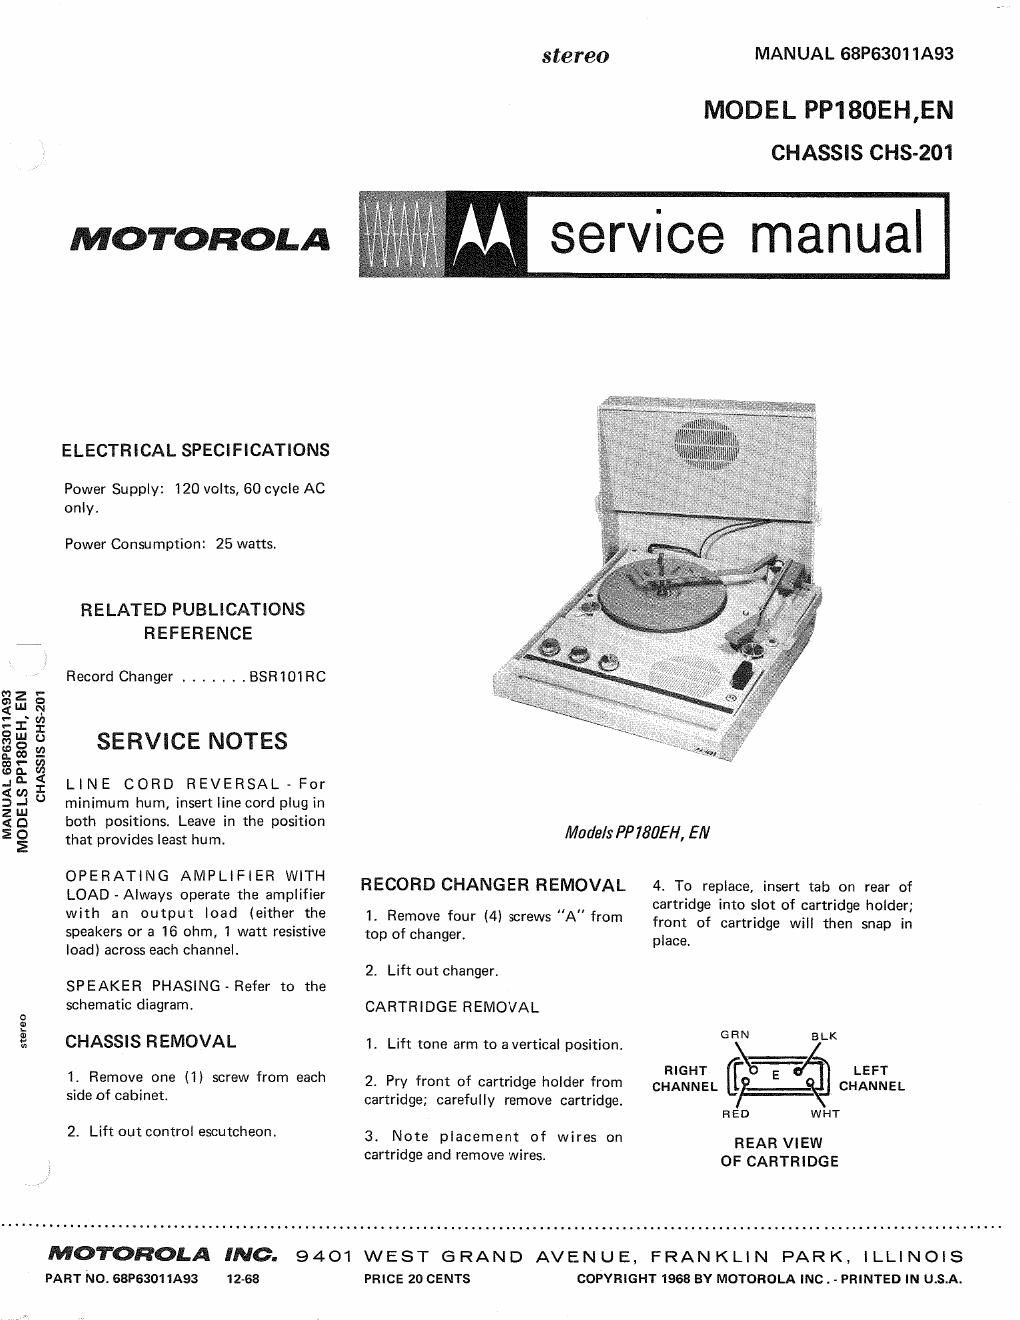 motorola pp 180 eh service manual